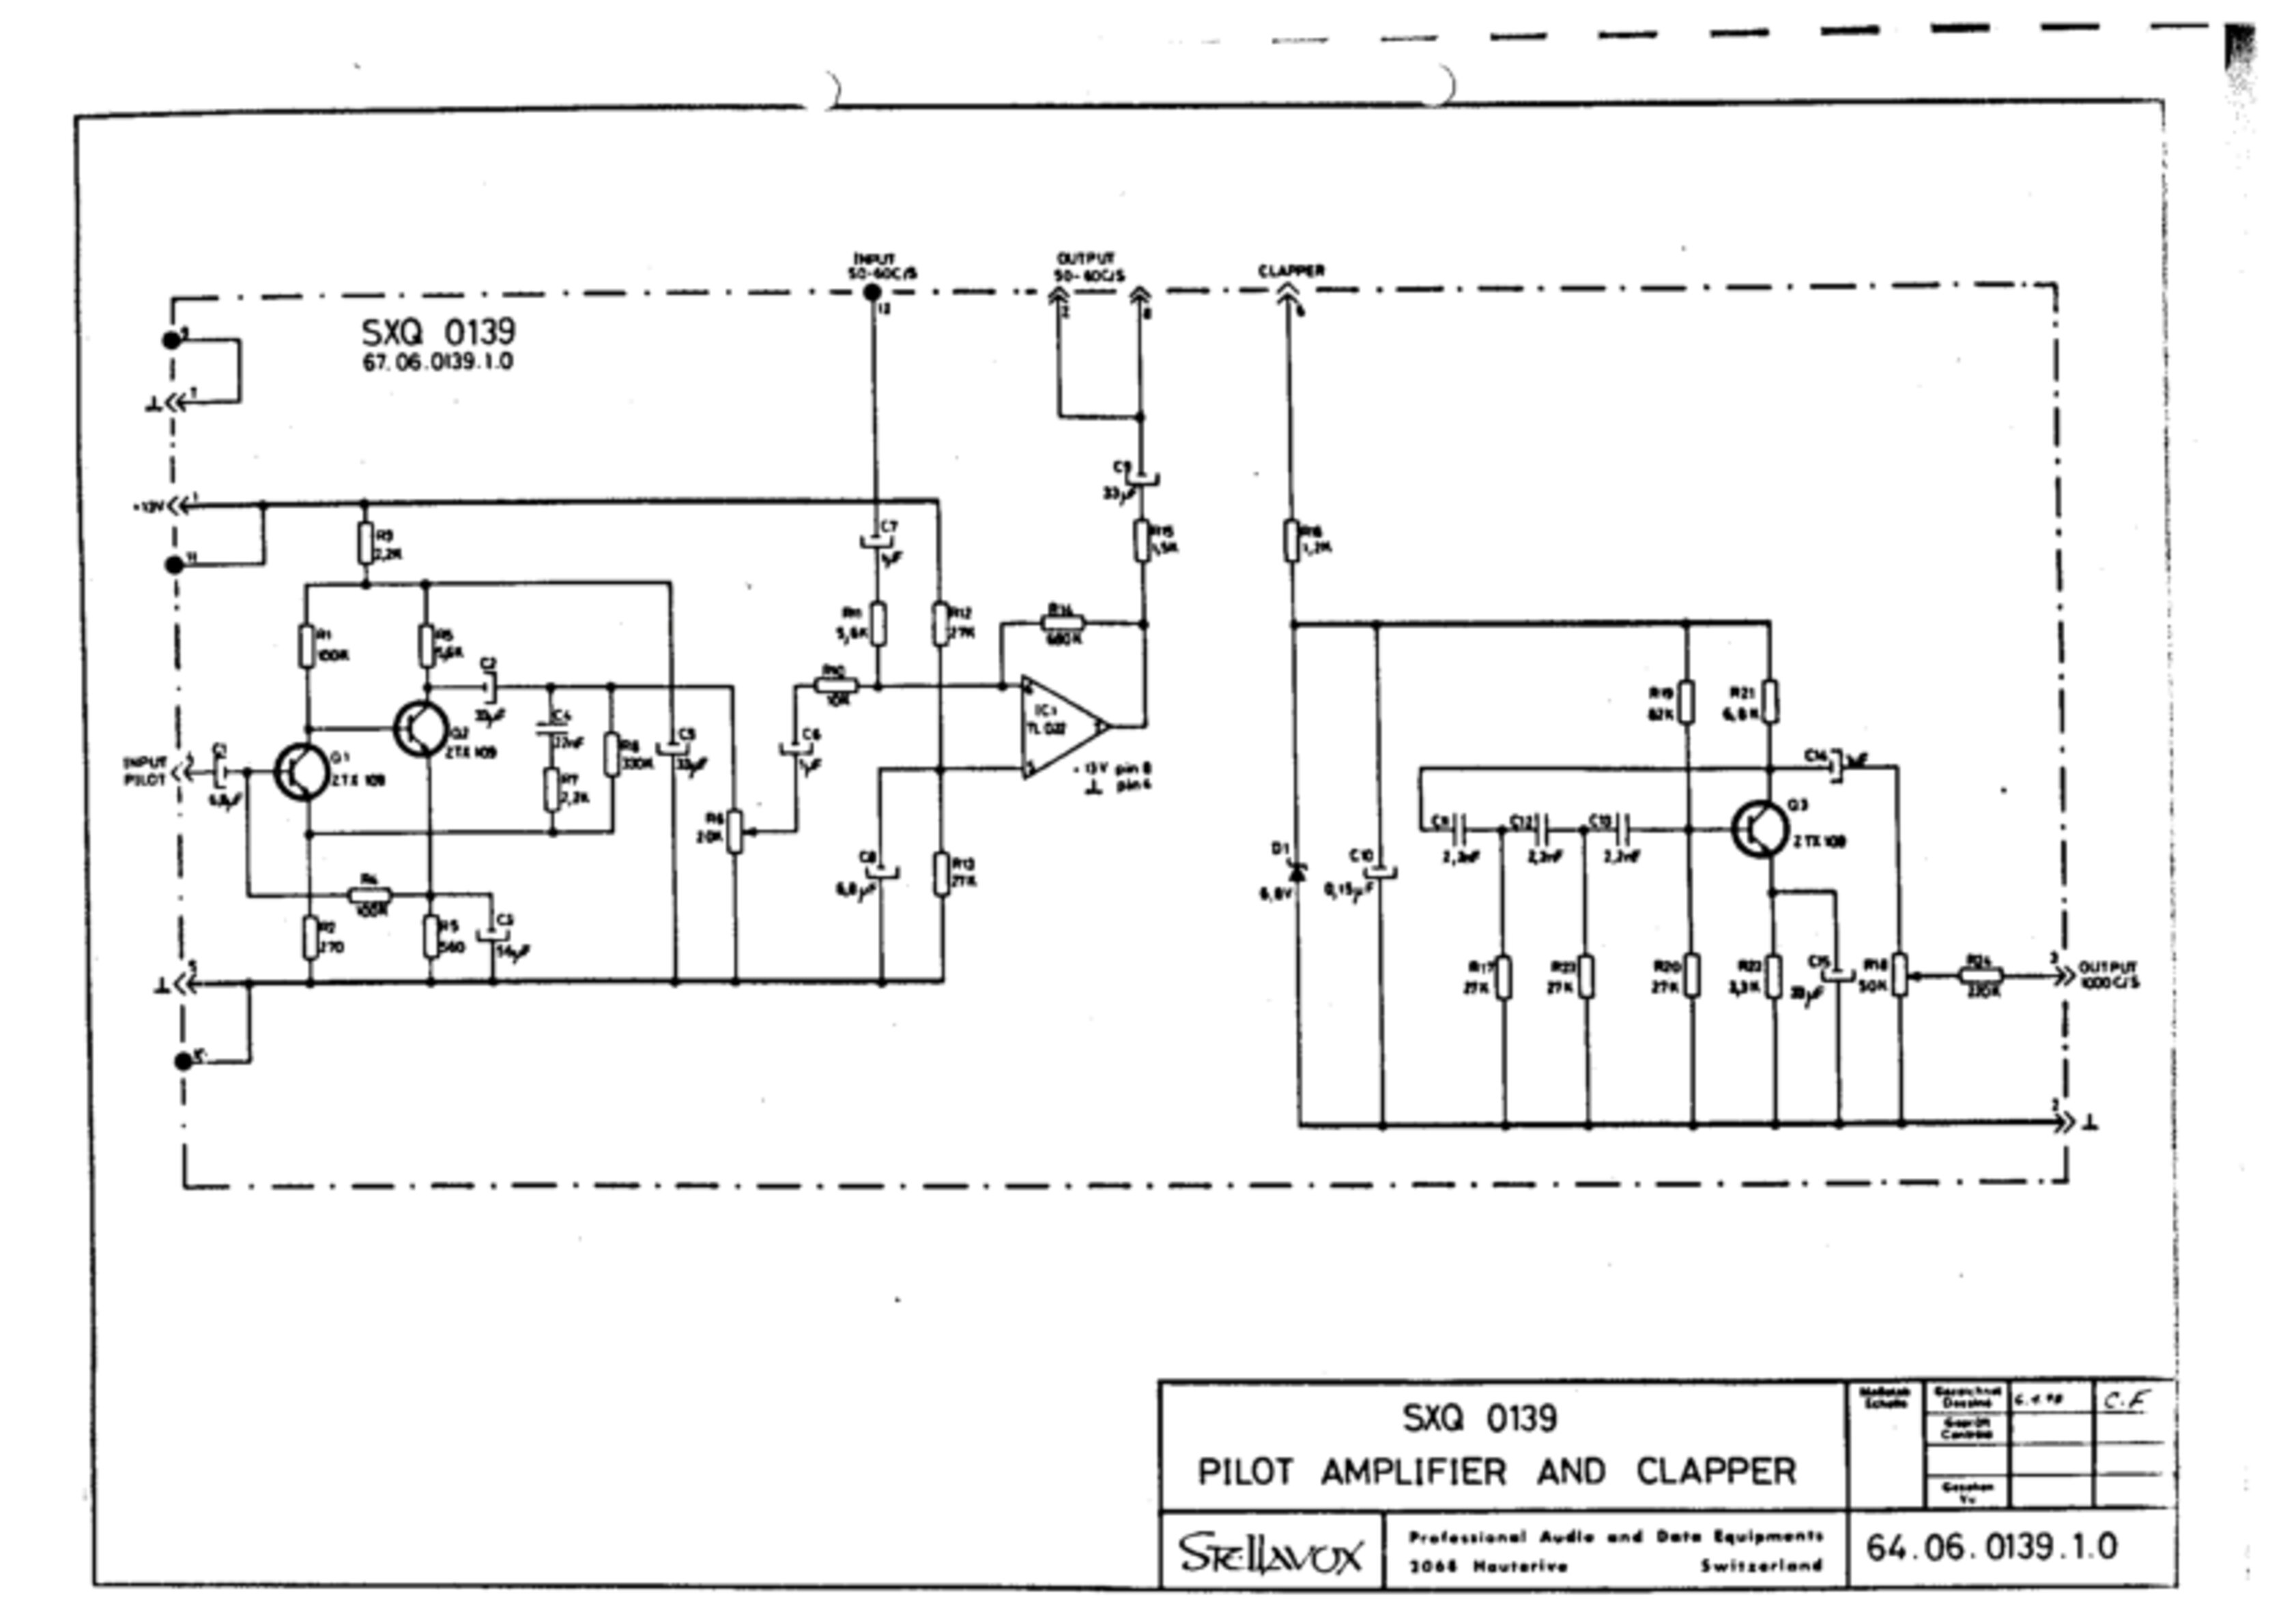 SXQ 0139 - Pilot amplifier and clapper - No. 64.06.0139.1.0